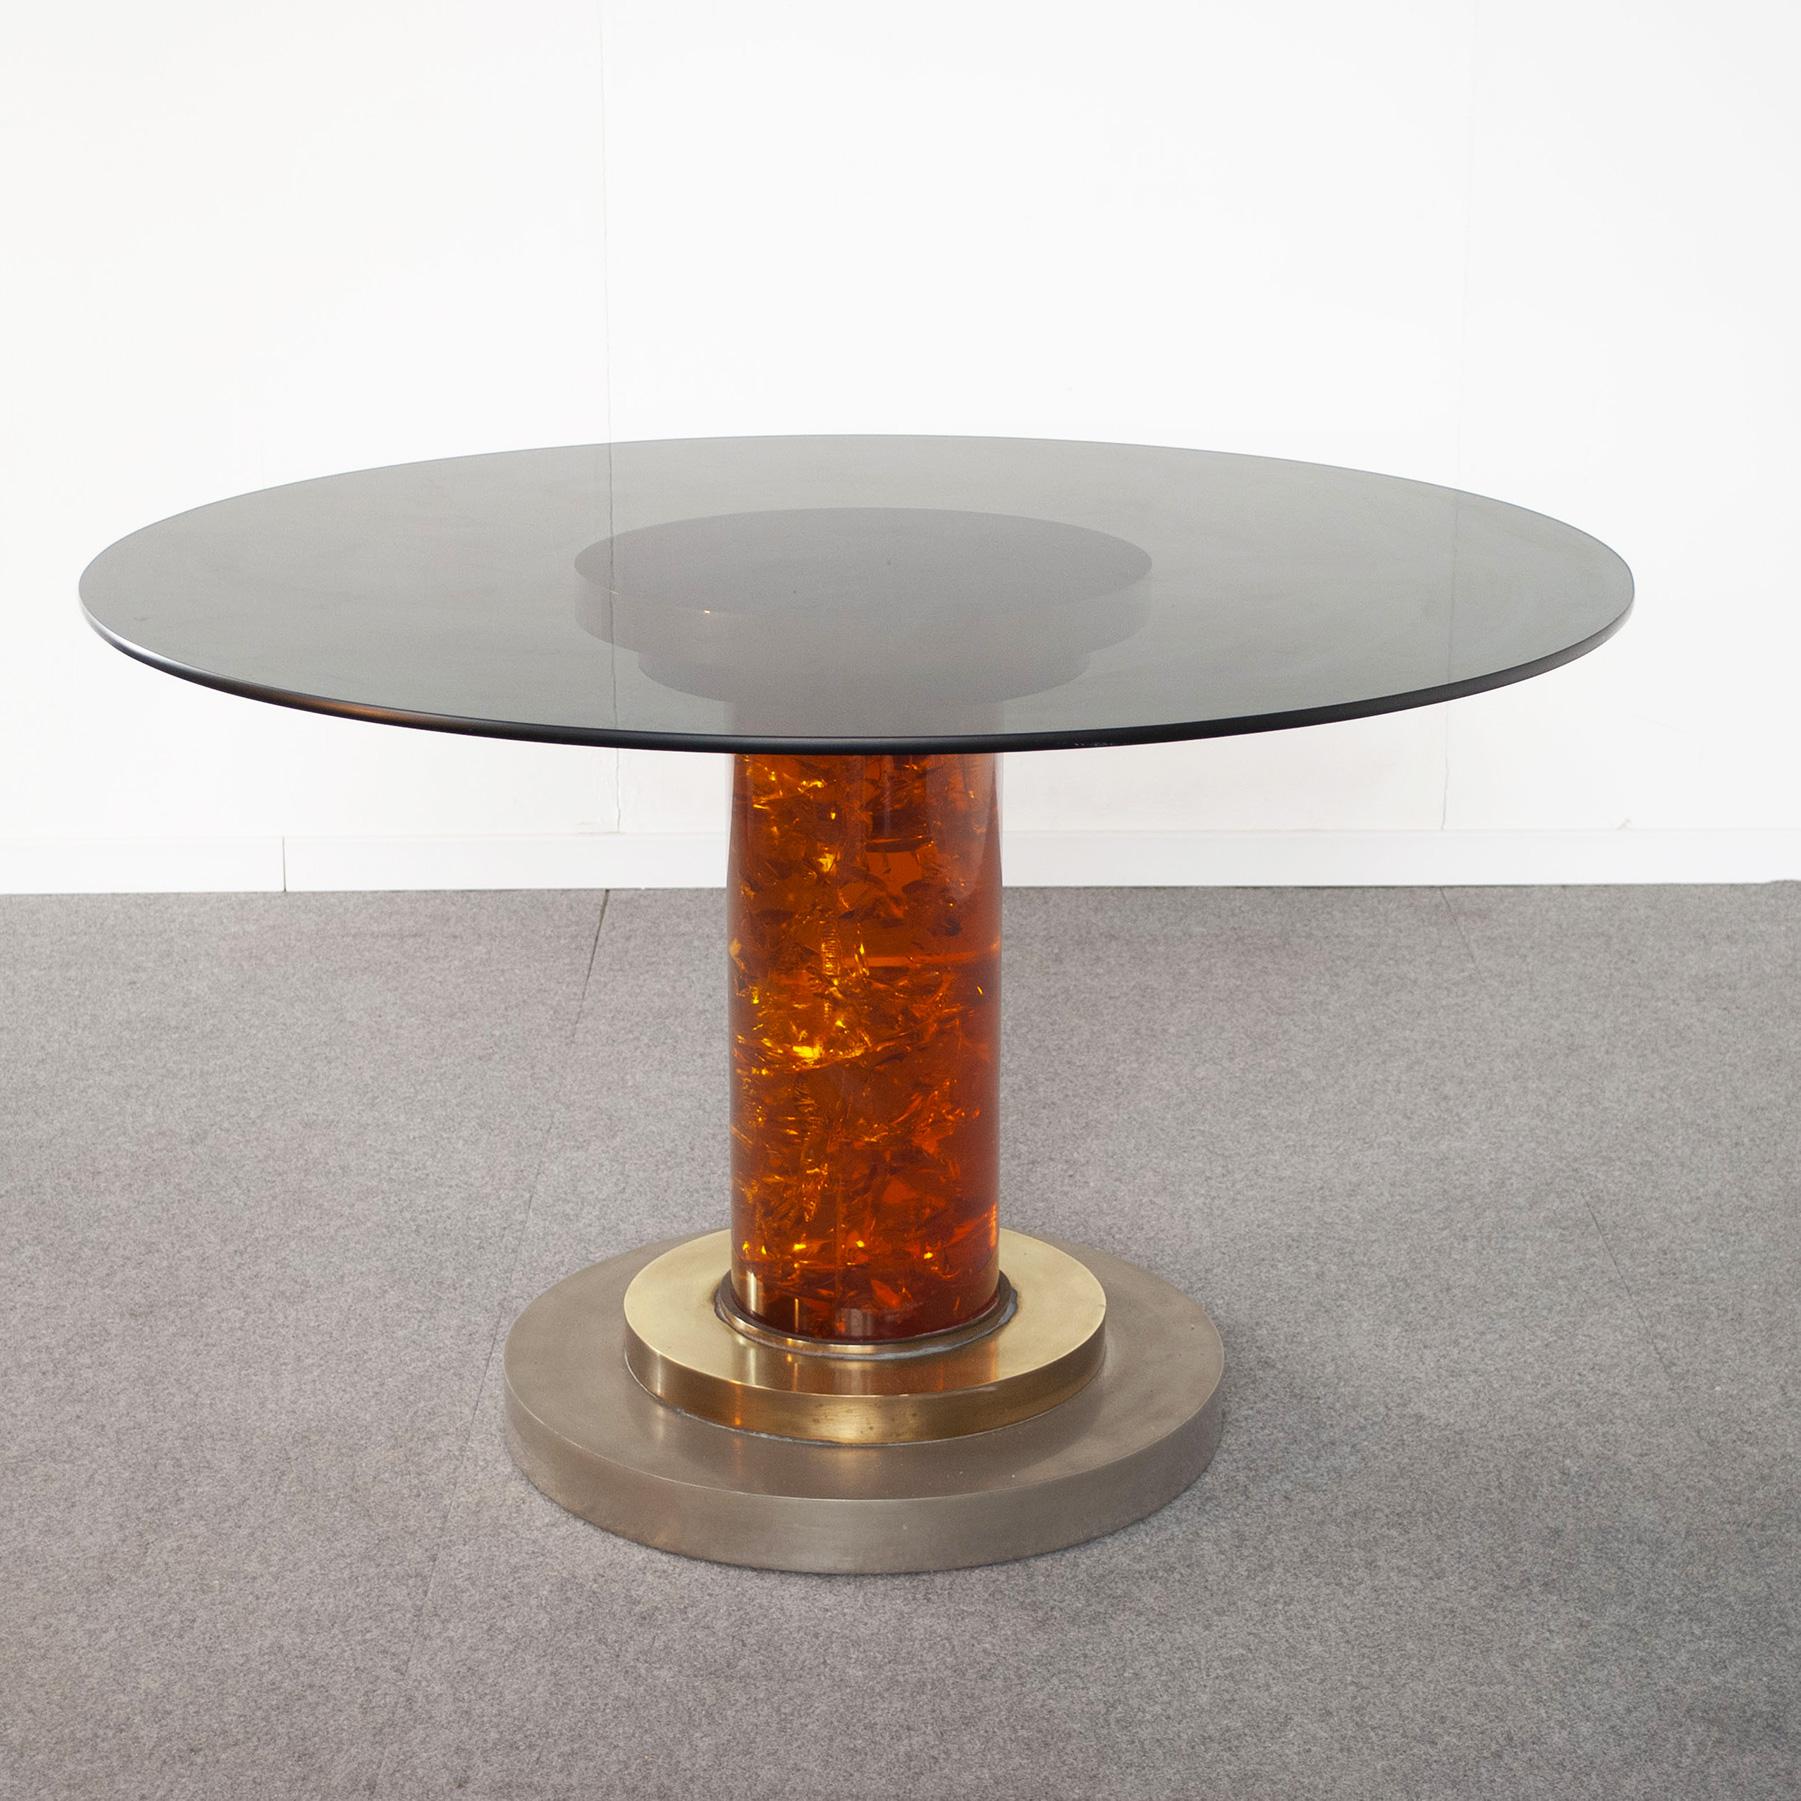 Table des années 70 composée d'un élégant mélange de métaux avec une finition en laiton poli et en acier. La base centrale est en plexiglas plein couleur miel d'un diamètre de 20 cm. Le plateau en verre fumé de l'image a une épaisseur de 15 mm et